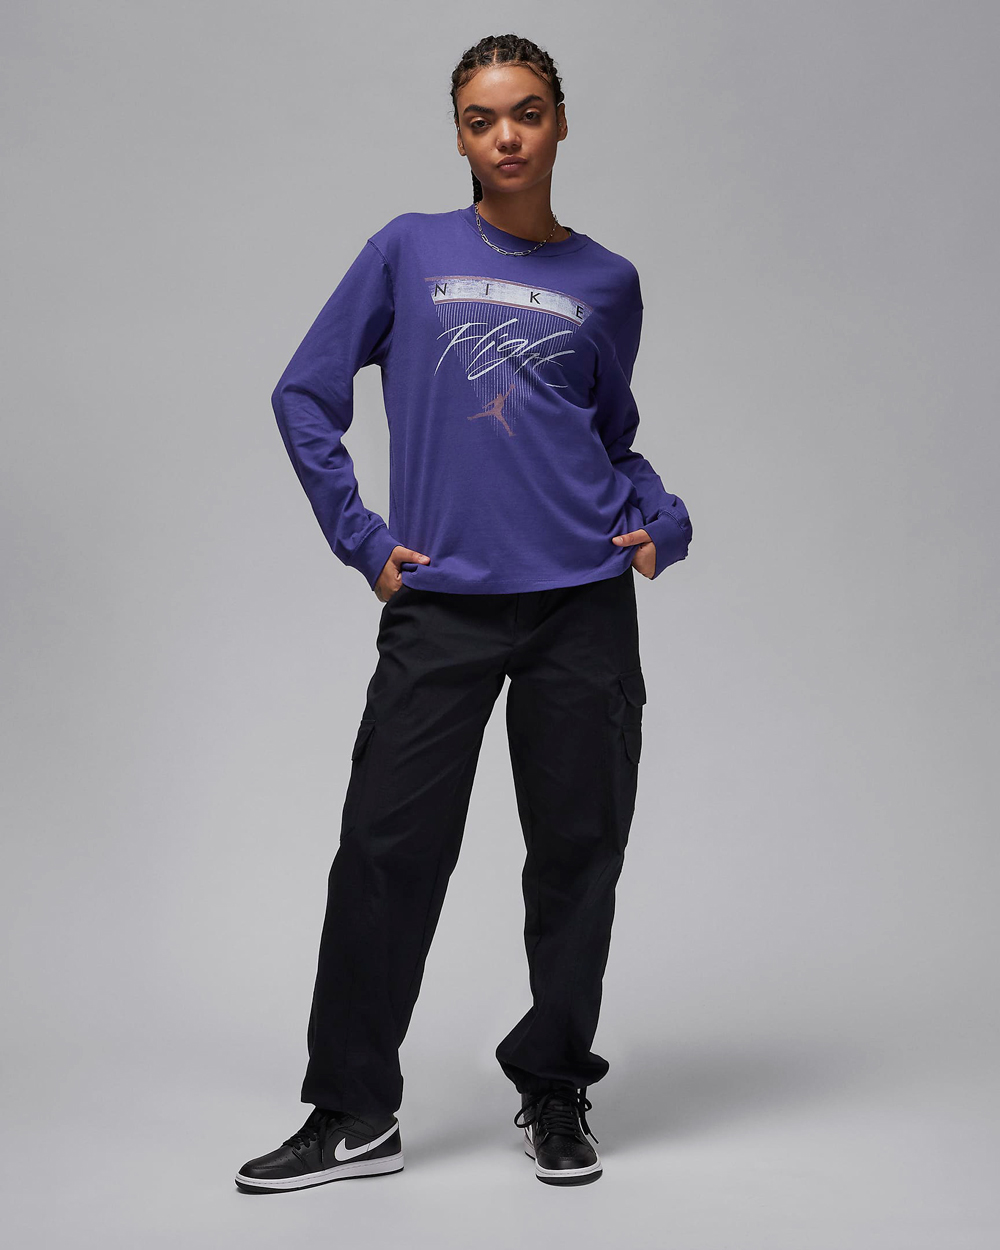 Jordan-Womens-Long-Sleeve-T-Shirt-Sky-J-Purple